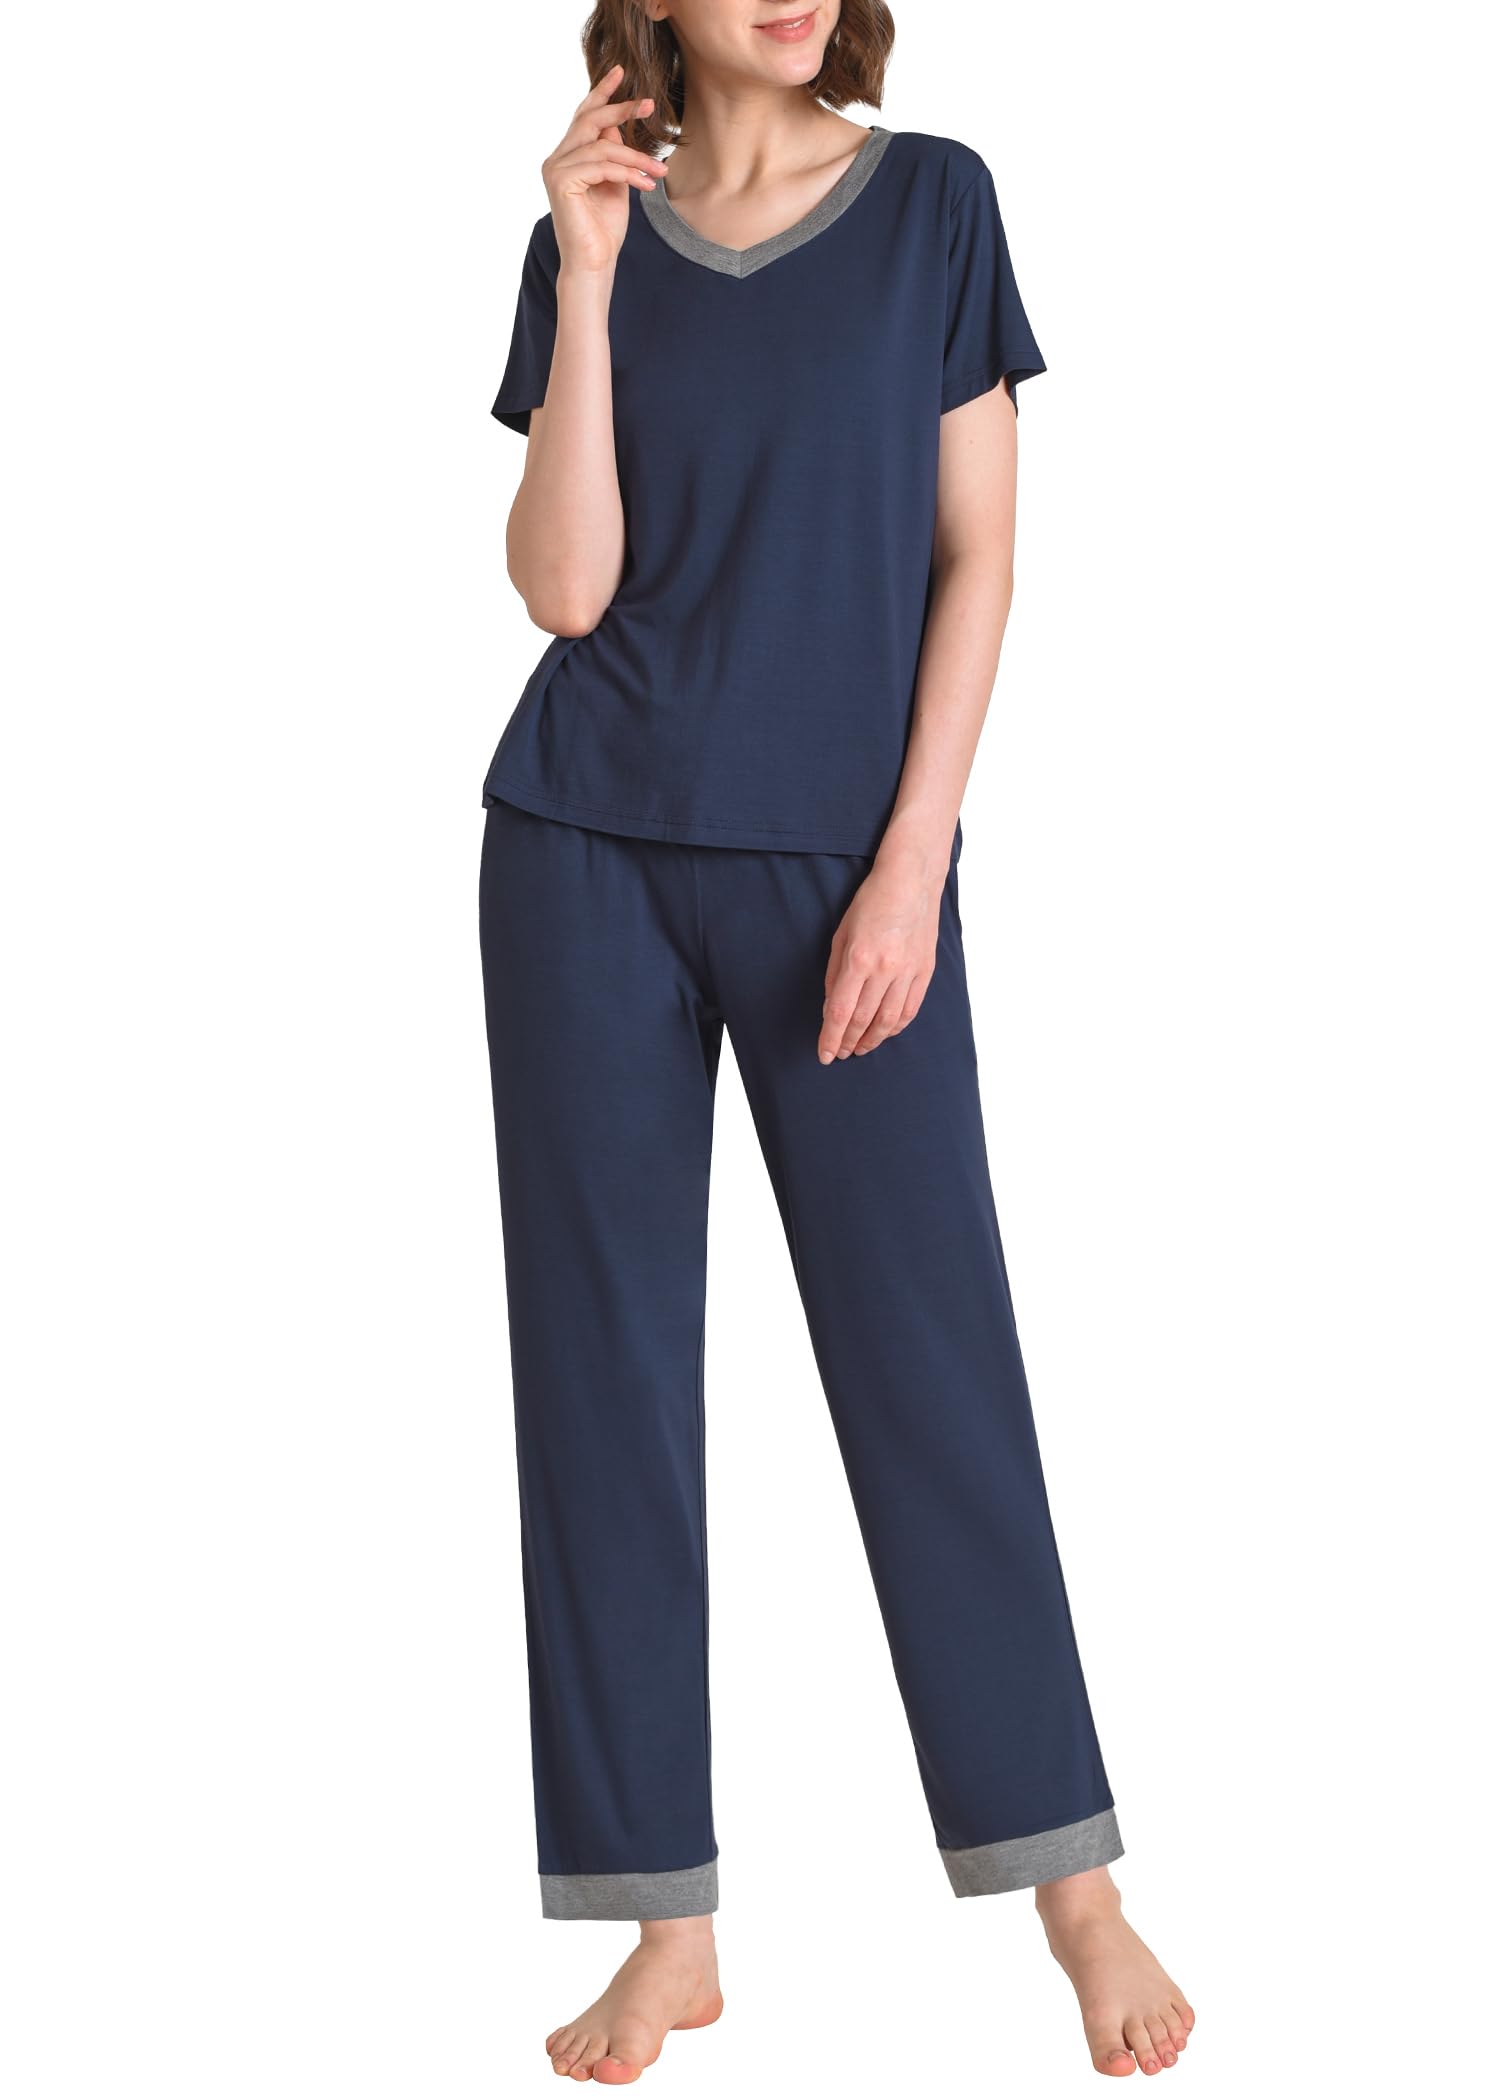 Women's Petite Pajamas Set Soft Viscose Loungewear - Latuza